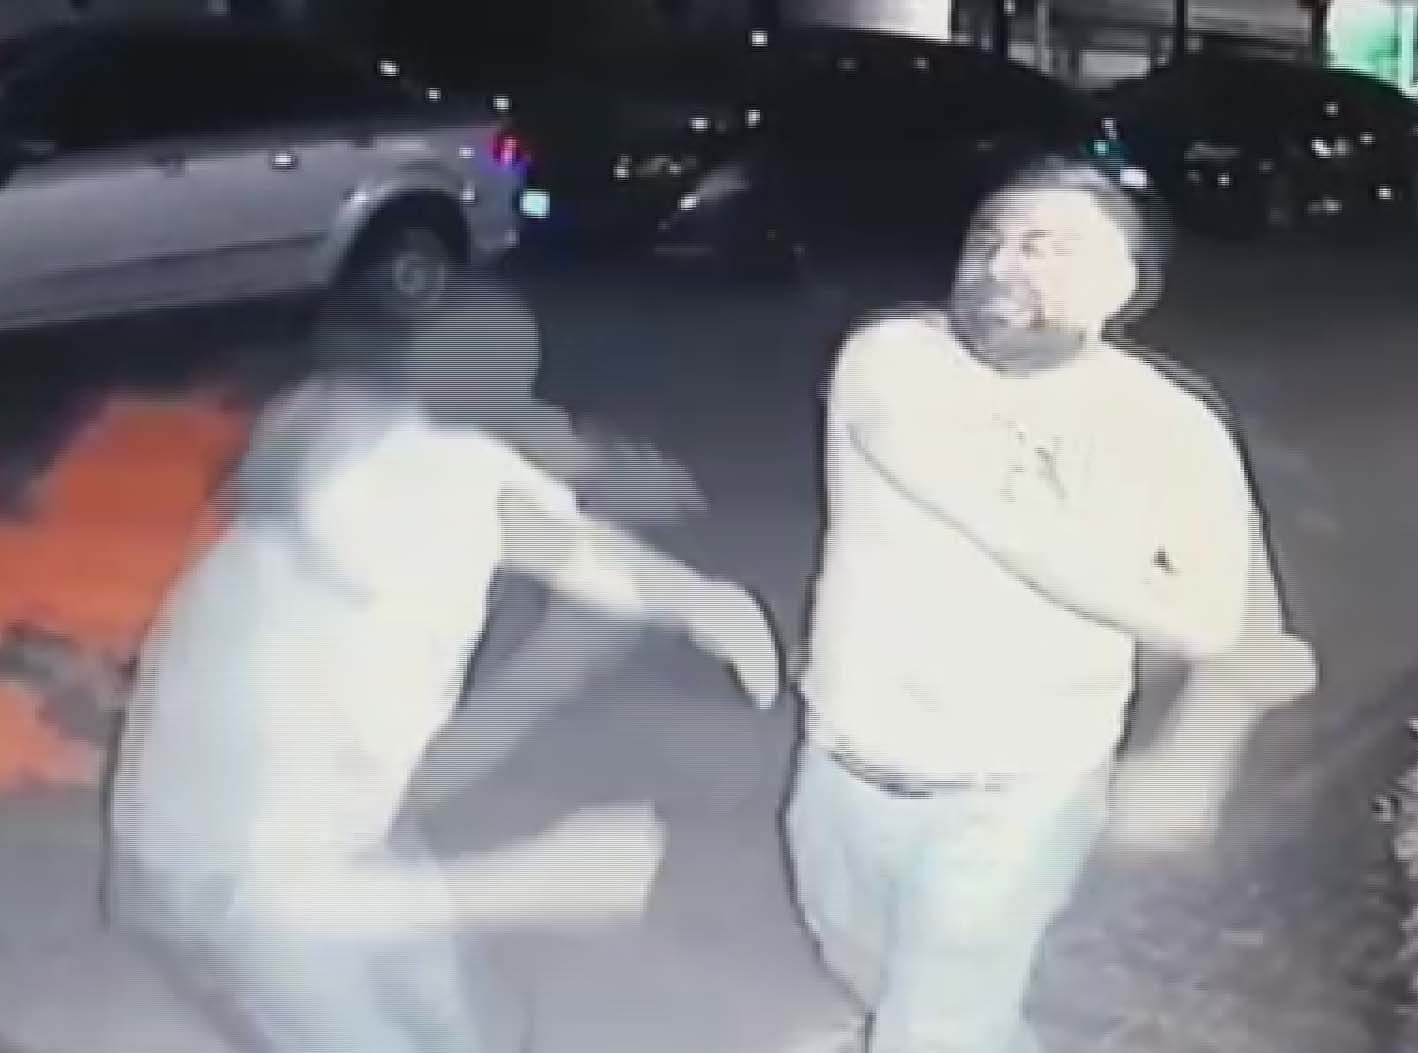 İstanbul’da güvenlik görevlisine feci dayak güvenlik kamerasına yansıdı |Video